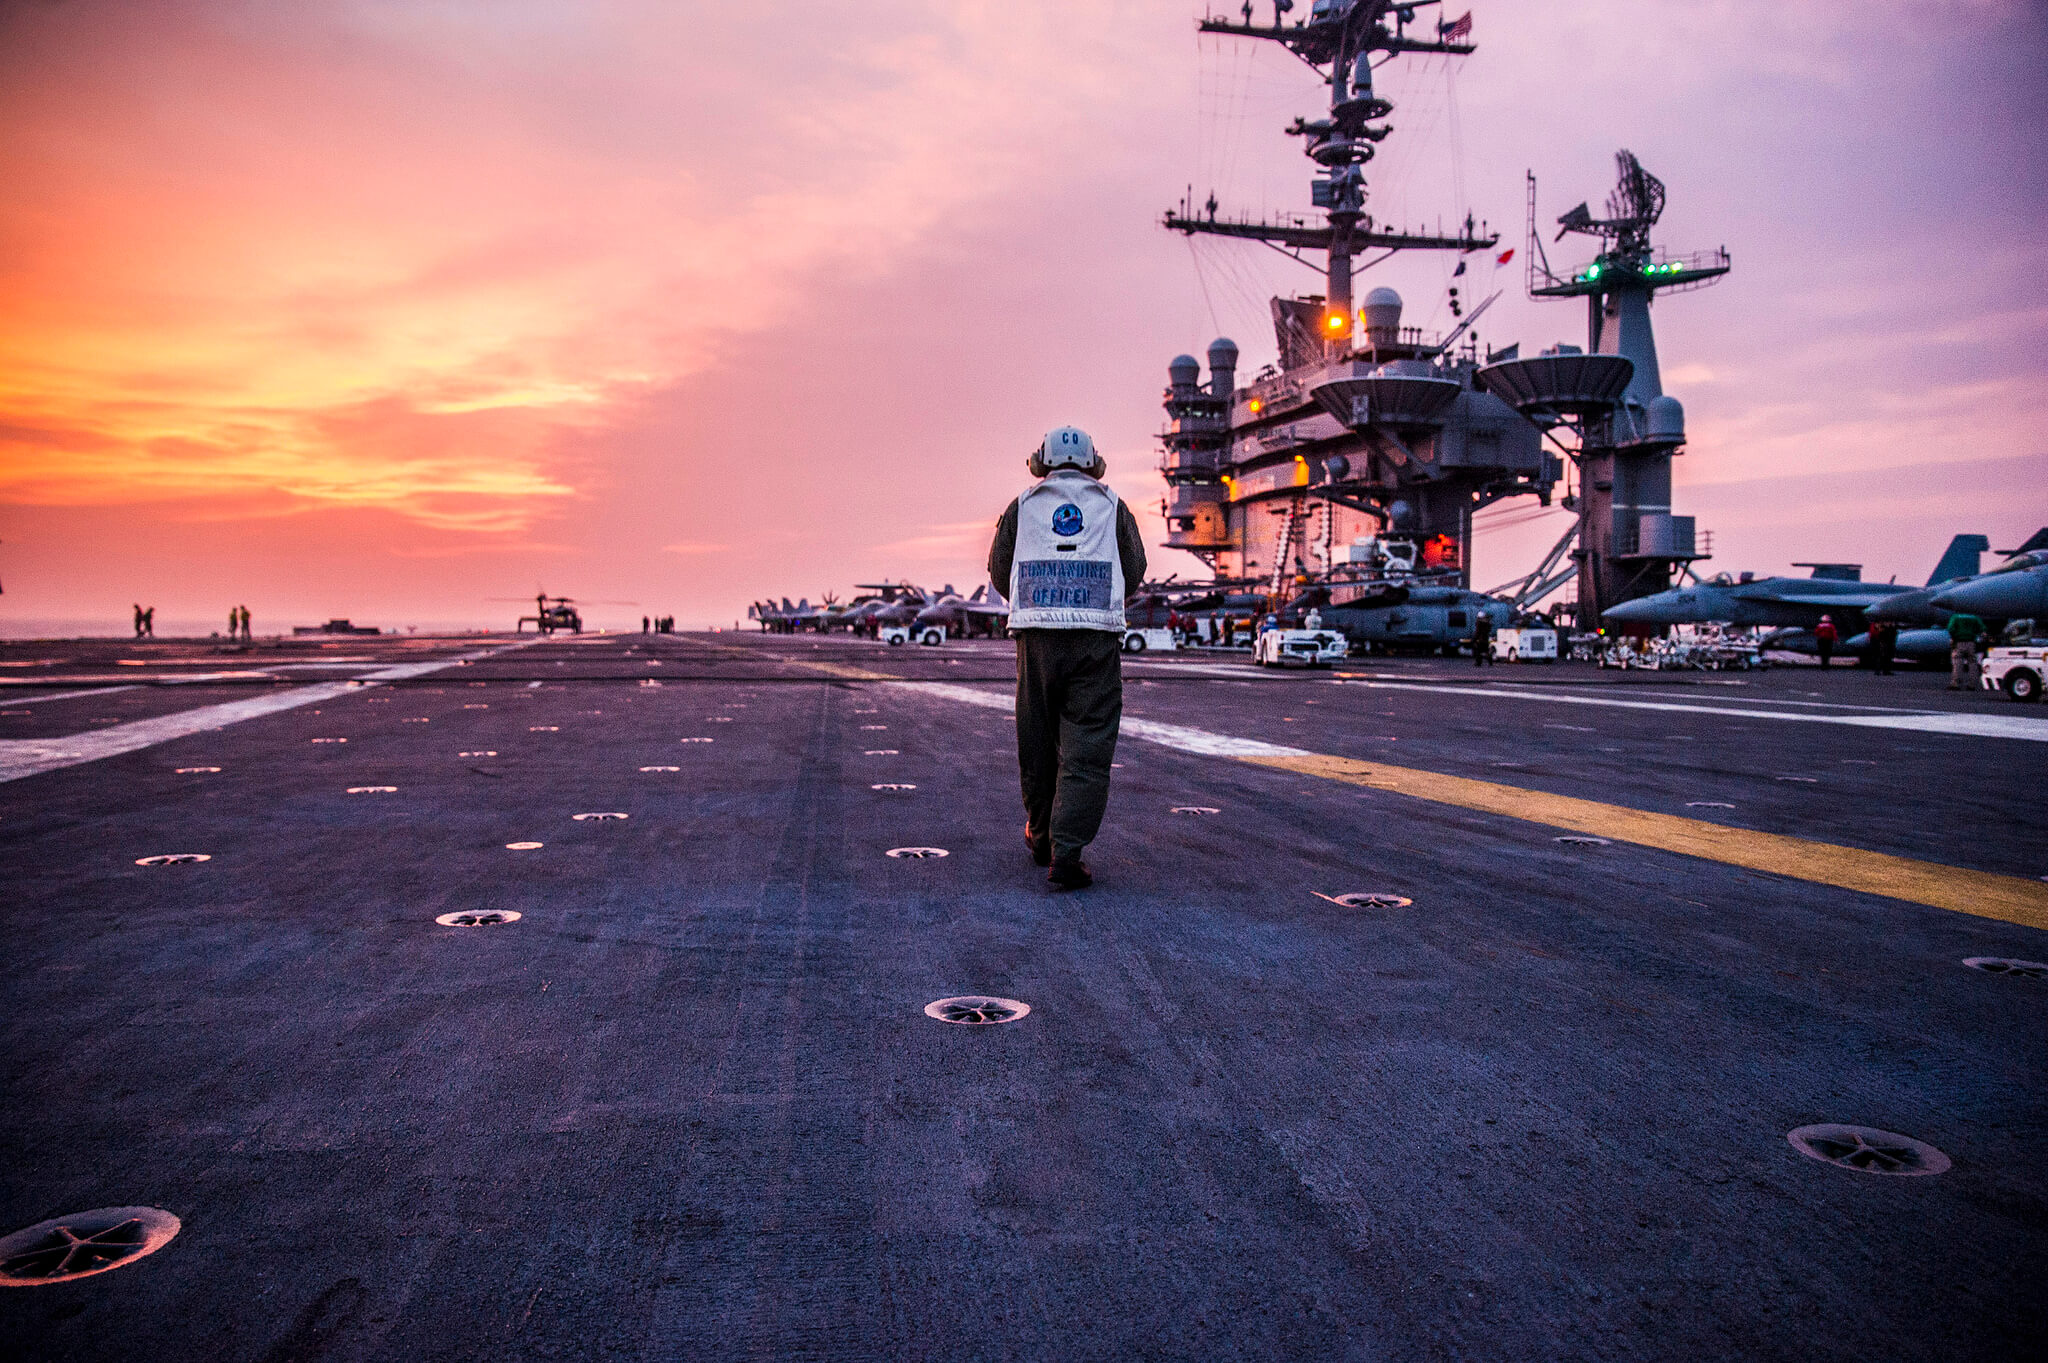 Het Amerikaanse vliegdekschip USS George Washington in de Zuid-Chinese Zee in 2014 - bron - US Department of Defence